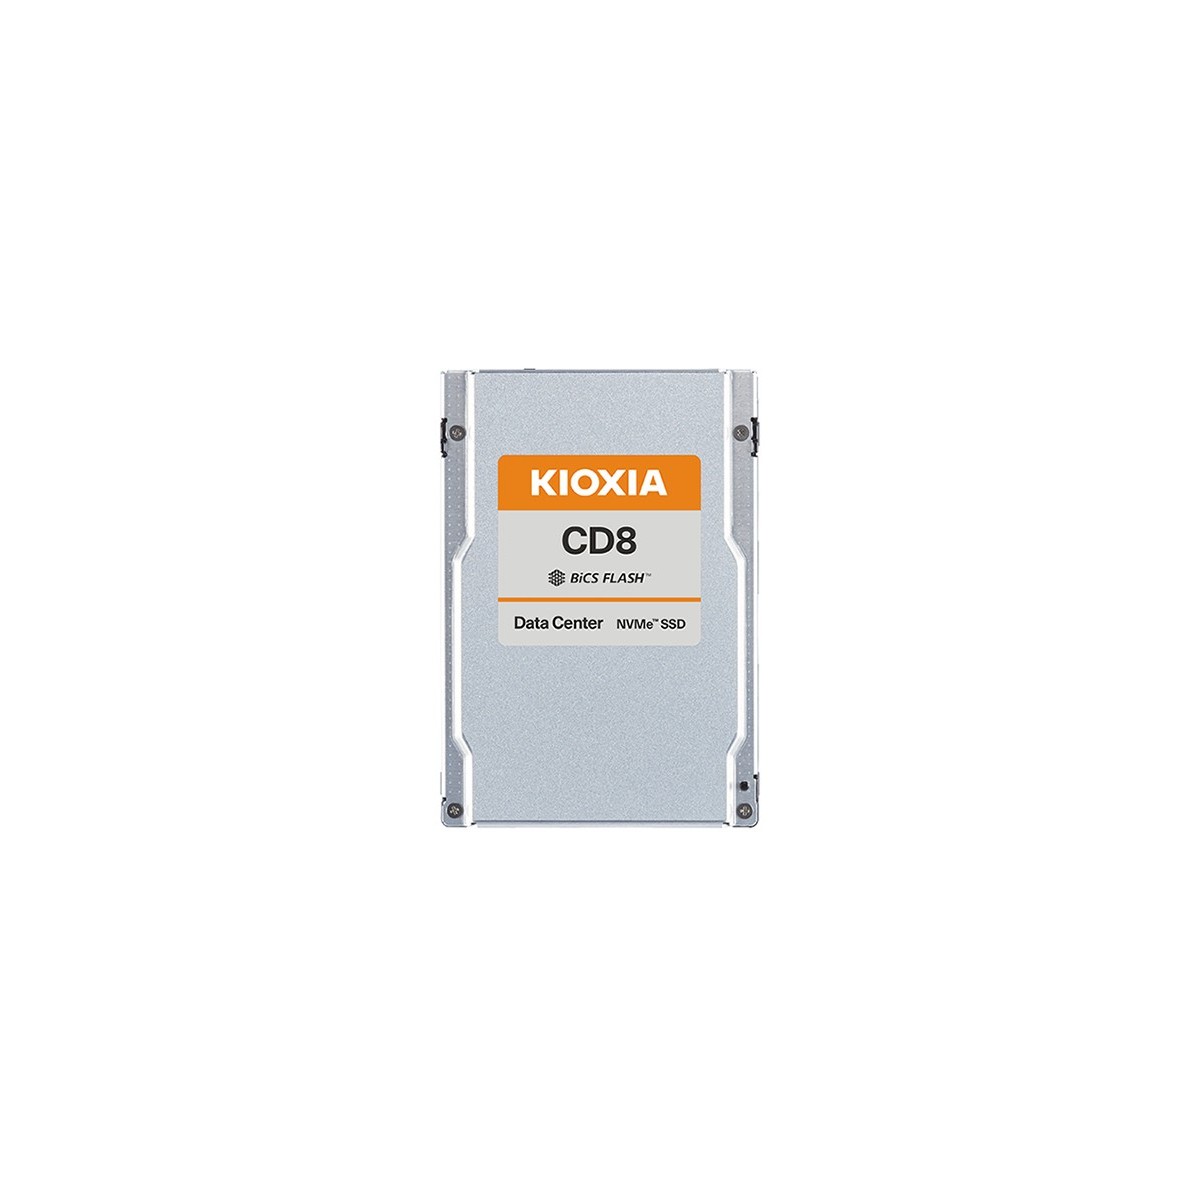 Kioxia X134 CD8-V dSDD 3.2TB PCIe U.2 15mm - Solid State Disk - 3,200 GB